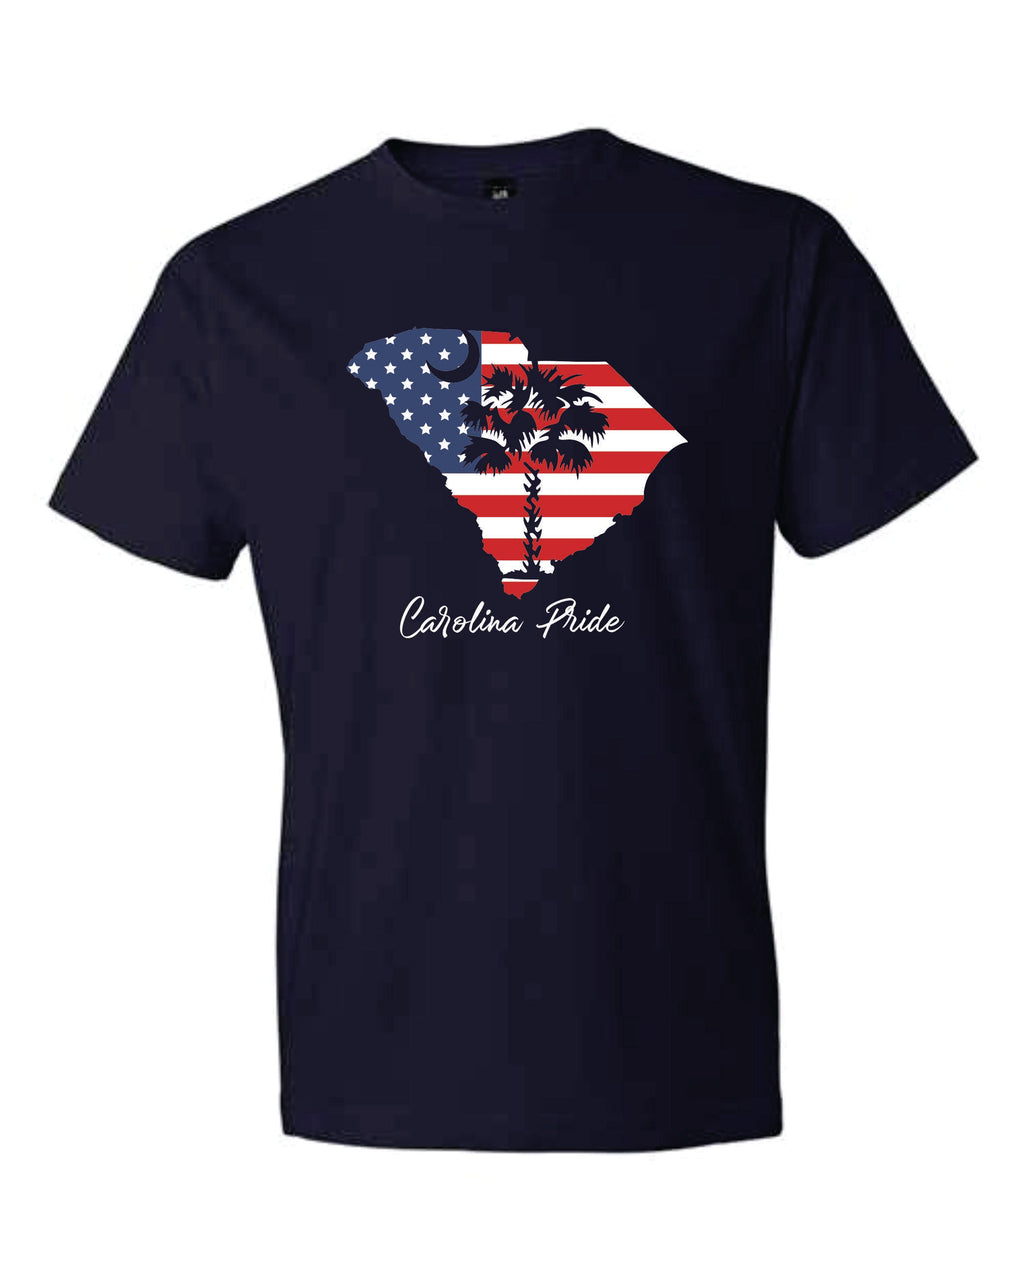 Carolina Pride T-shirt - Youth Sizes